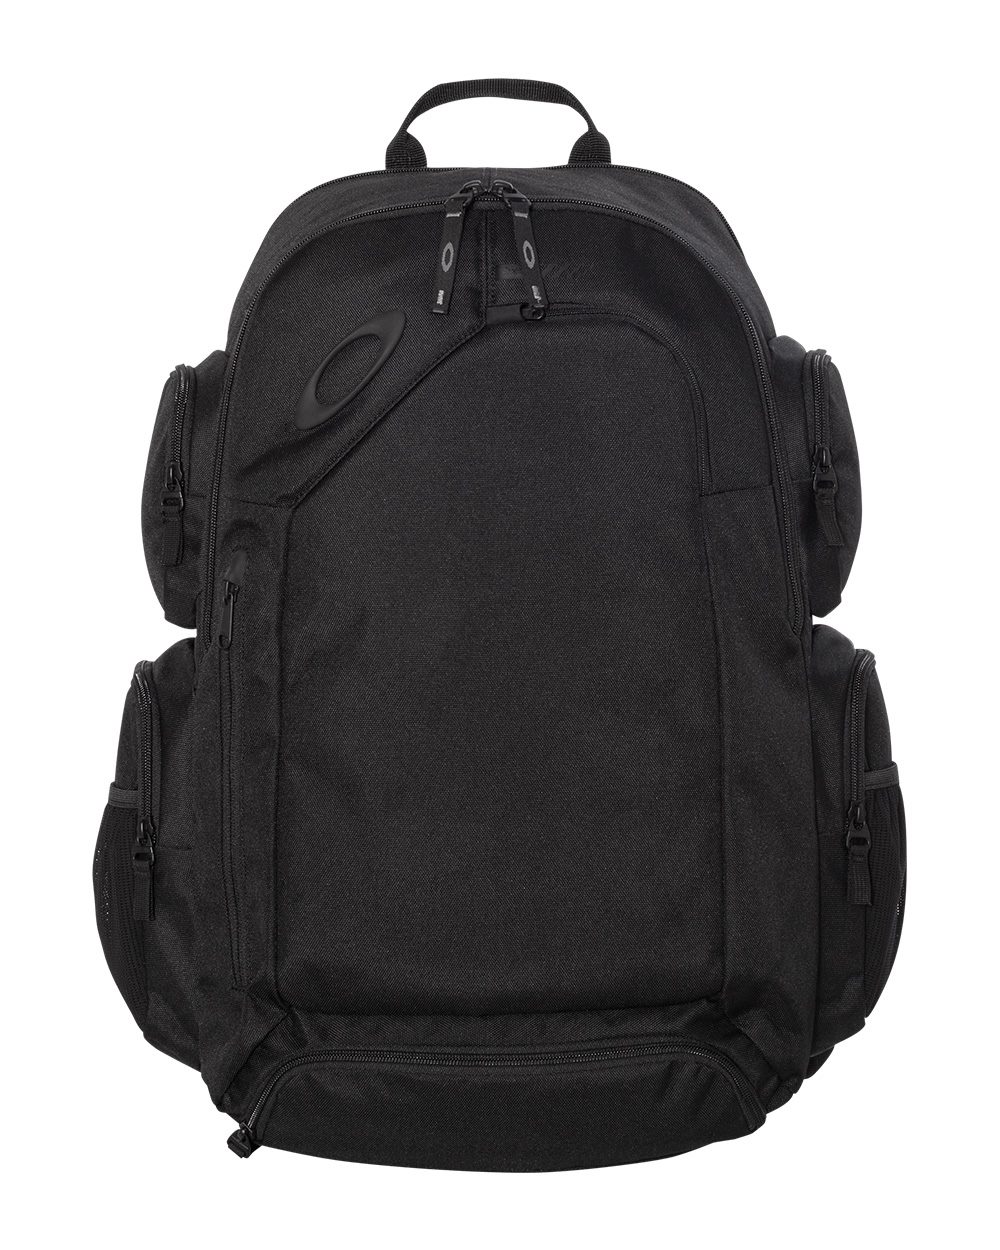 Oakley 92983ODM - 32L Method 1080 Backpack